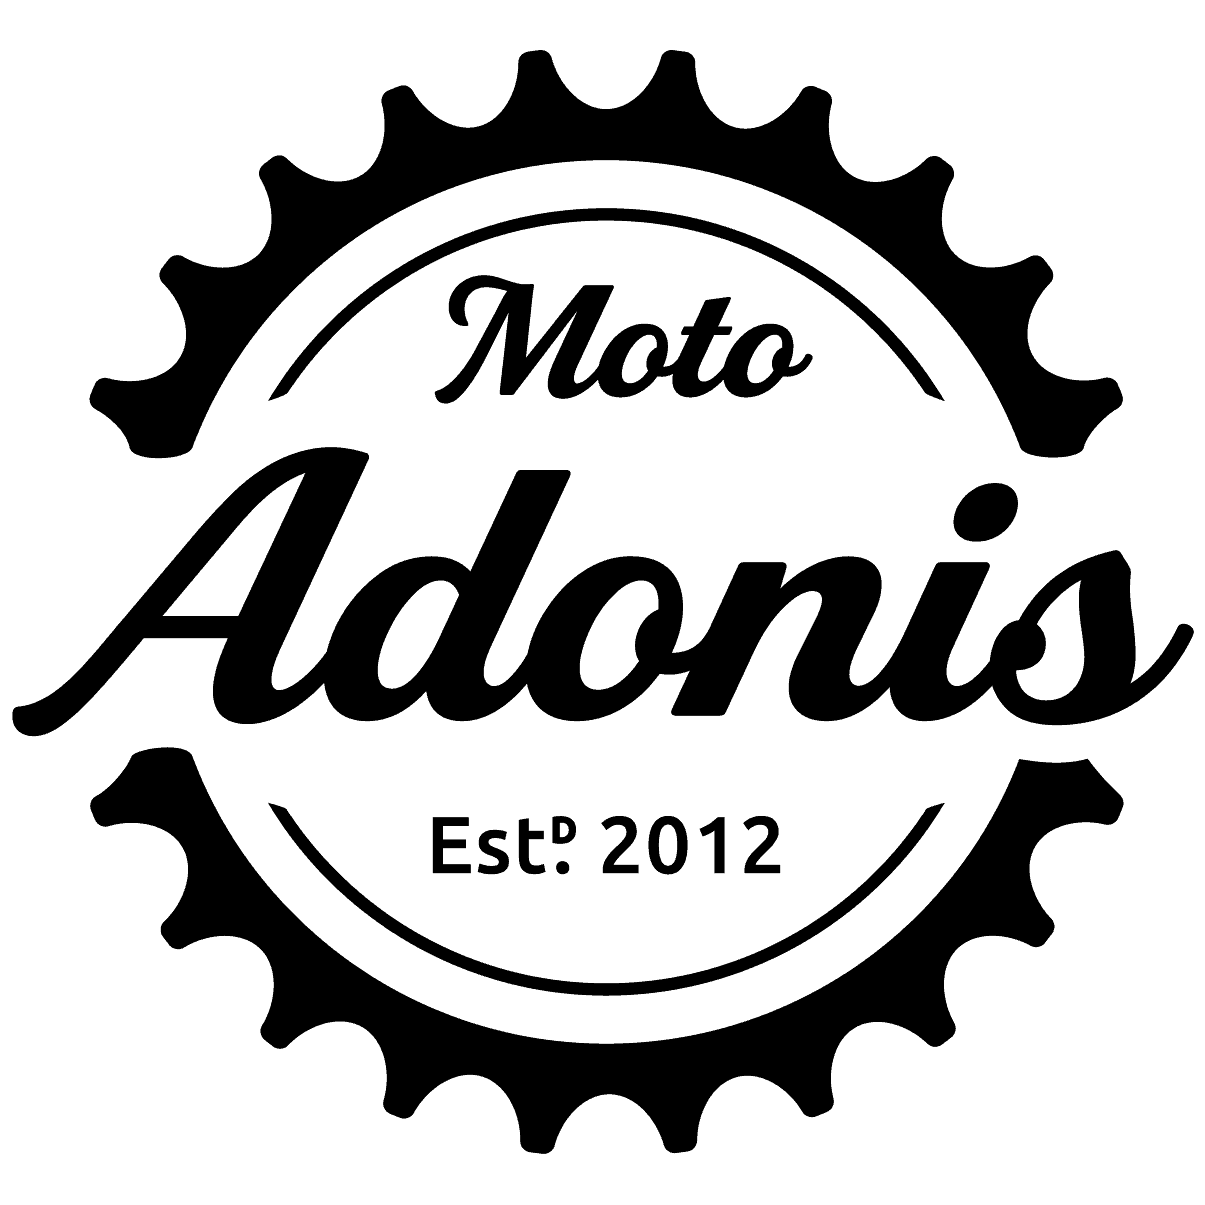 Moto Adonis logo